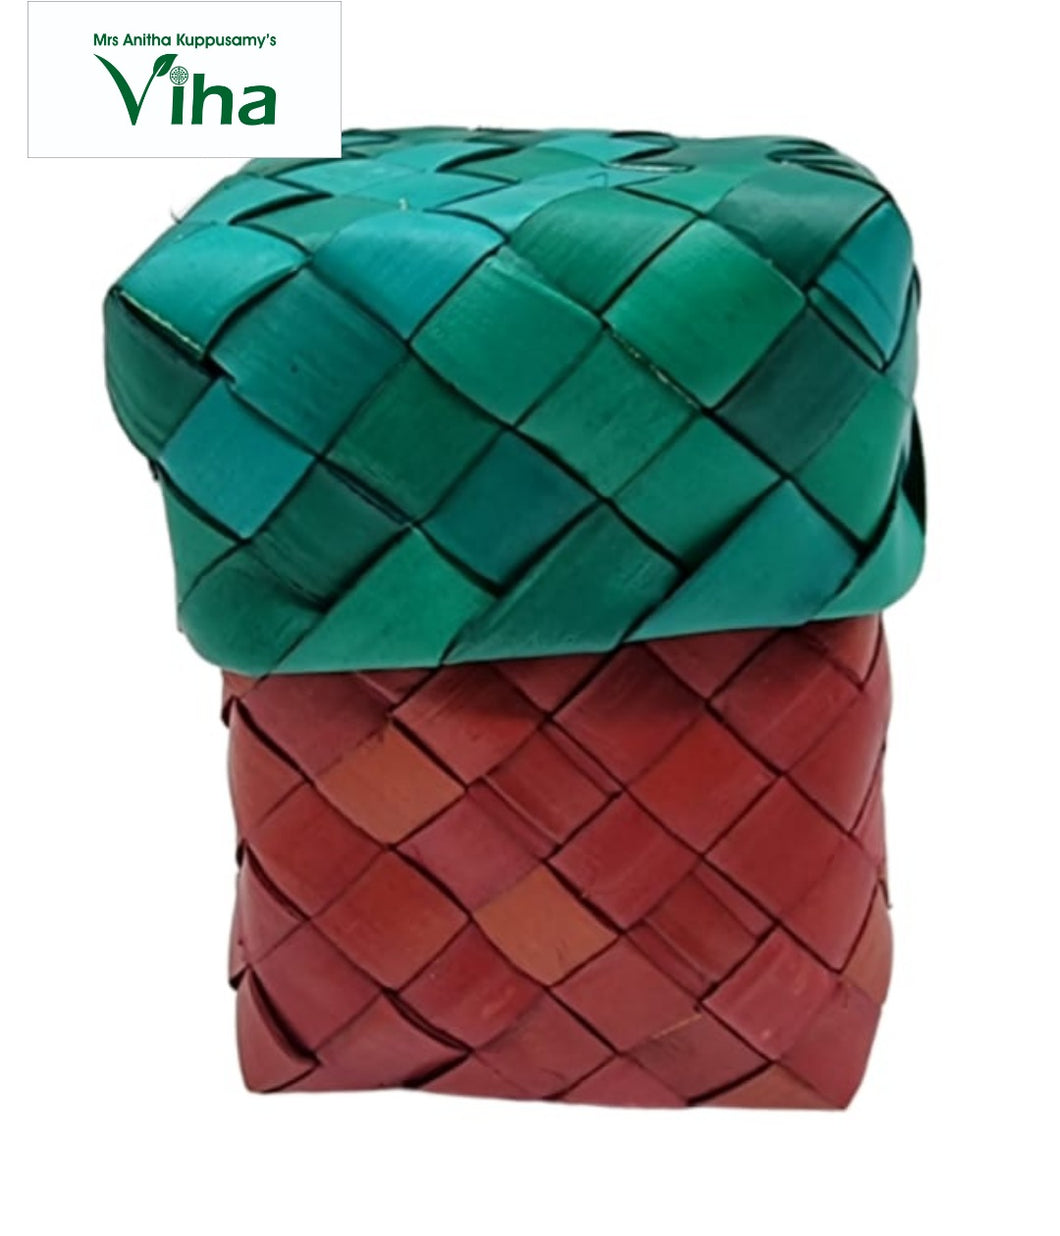 Palm Woven box| Code - P 031